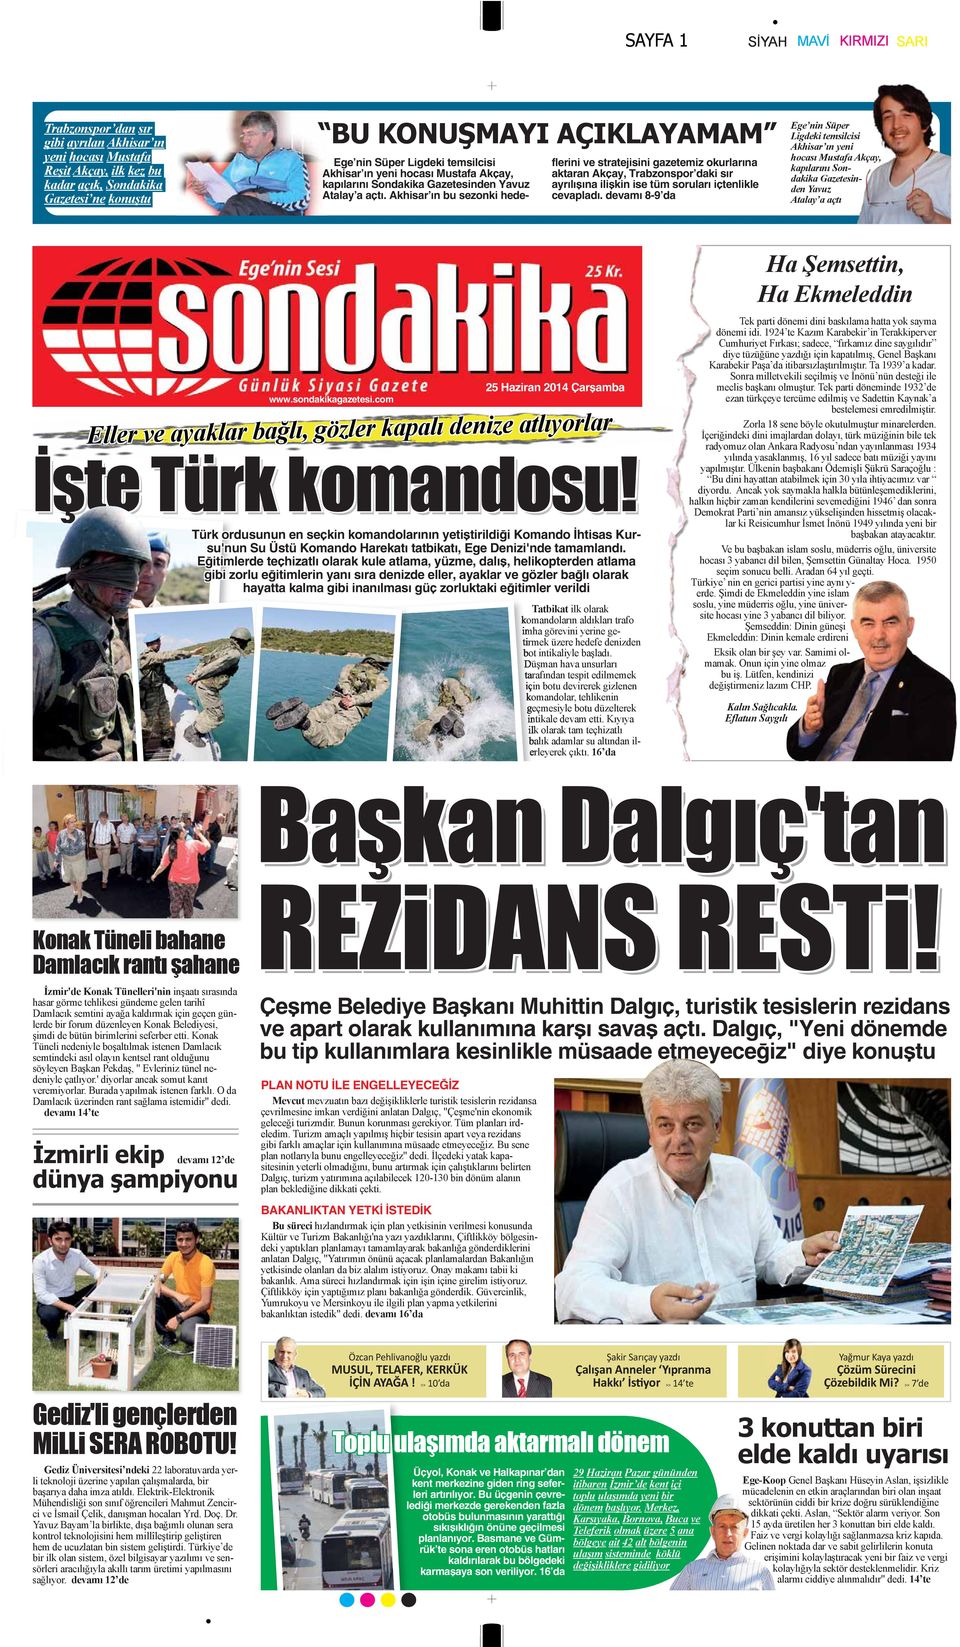 sondakikagazetesi.com 25 Haziran 2014 Çarşamba Türk ordusunun en seçkin komandolarının yetiştirildiği Komando İhtisas Kursu'nun Su Üstü Komando Harekatı tatbikatı, Ege Denizi'nde tamamlandı.